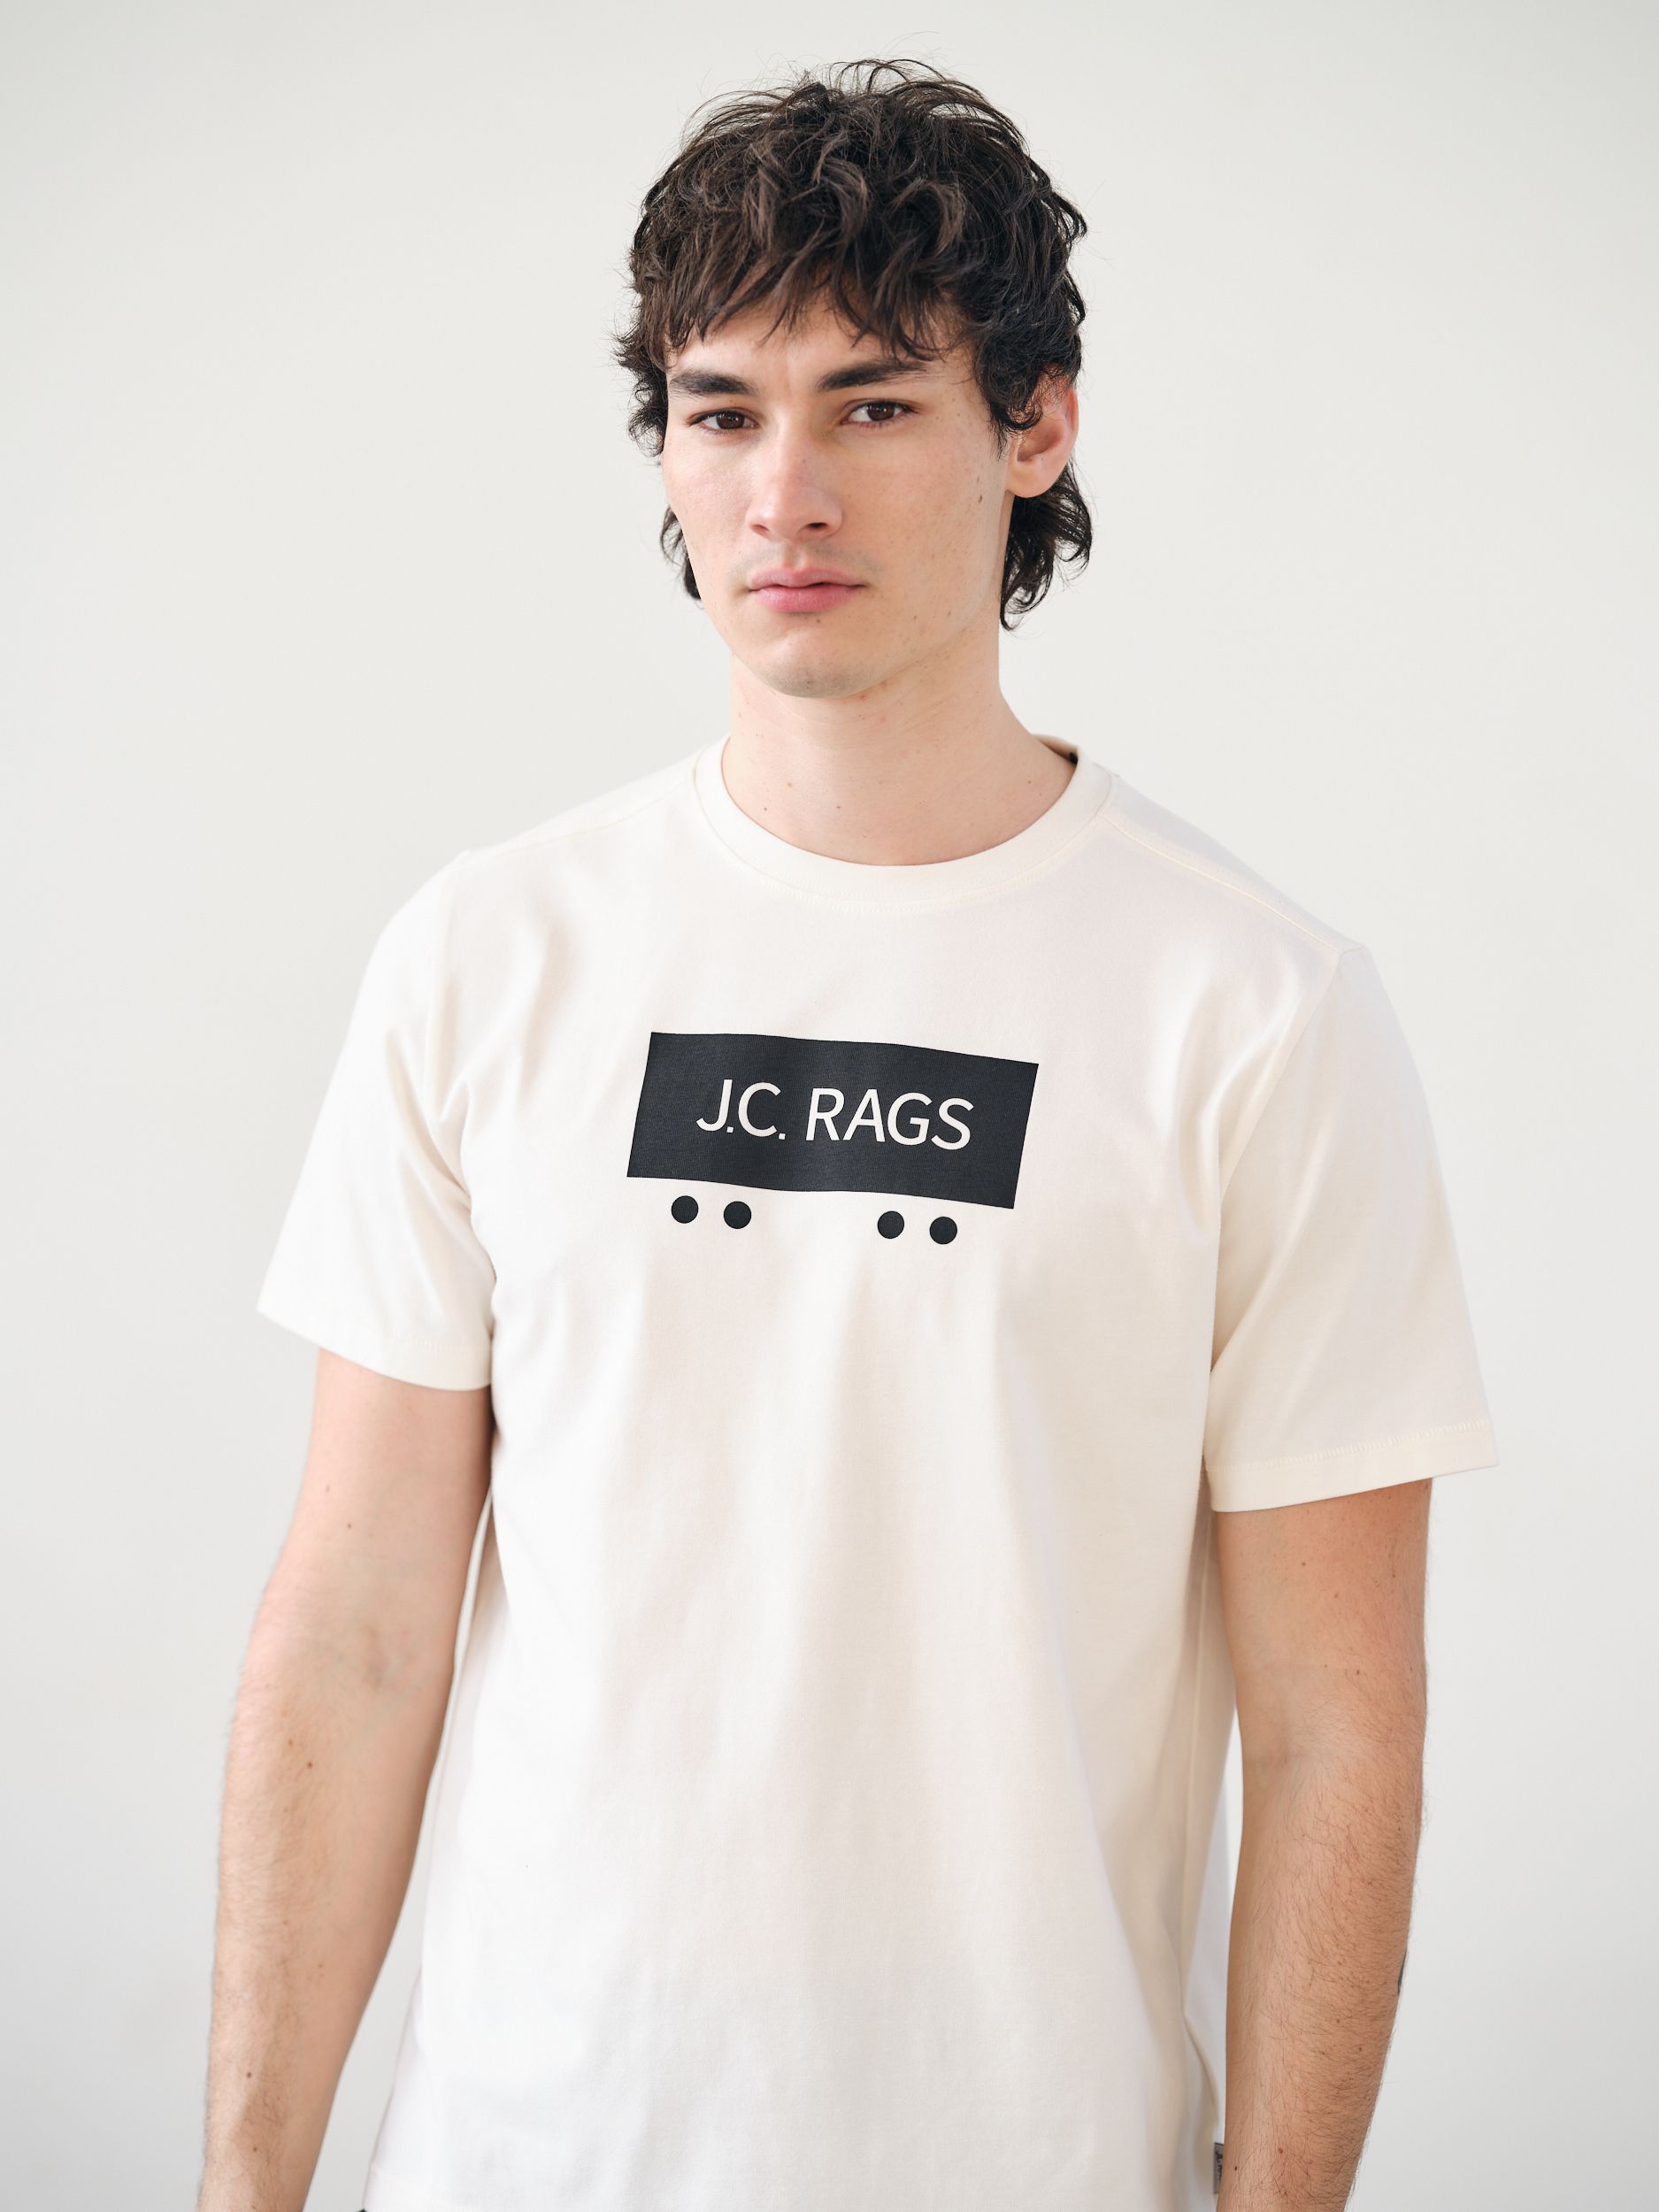 J.C. RAGS Joe T-shirt KM Coconut milk 078927-002-L